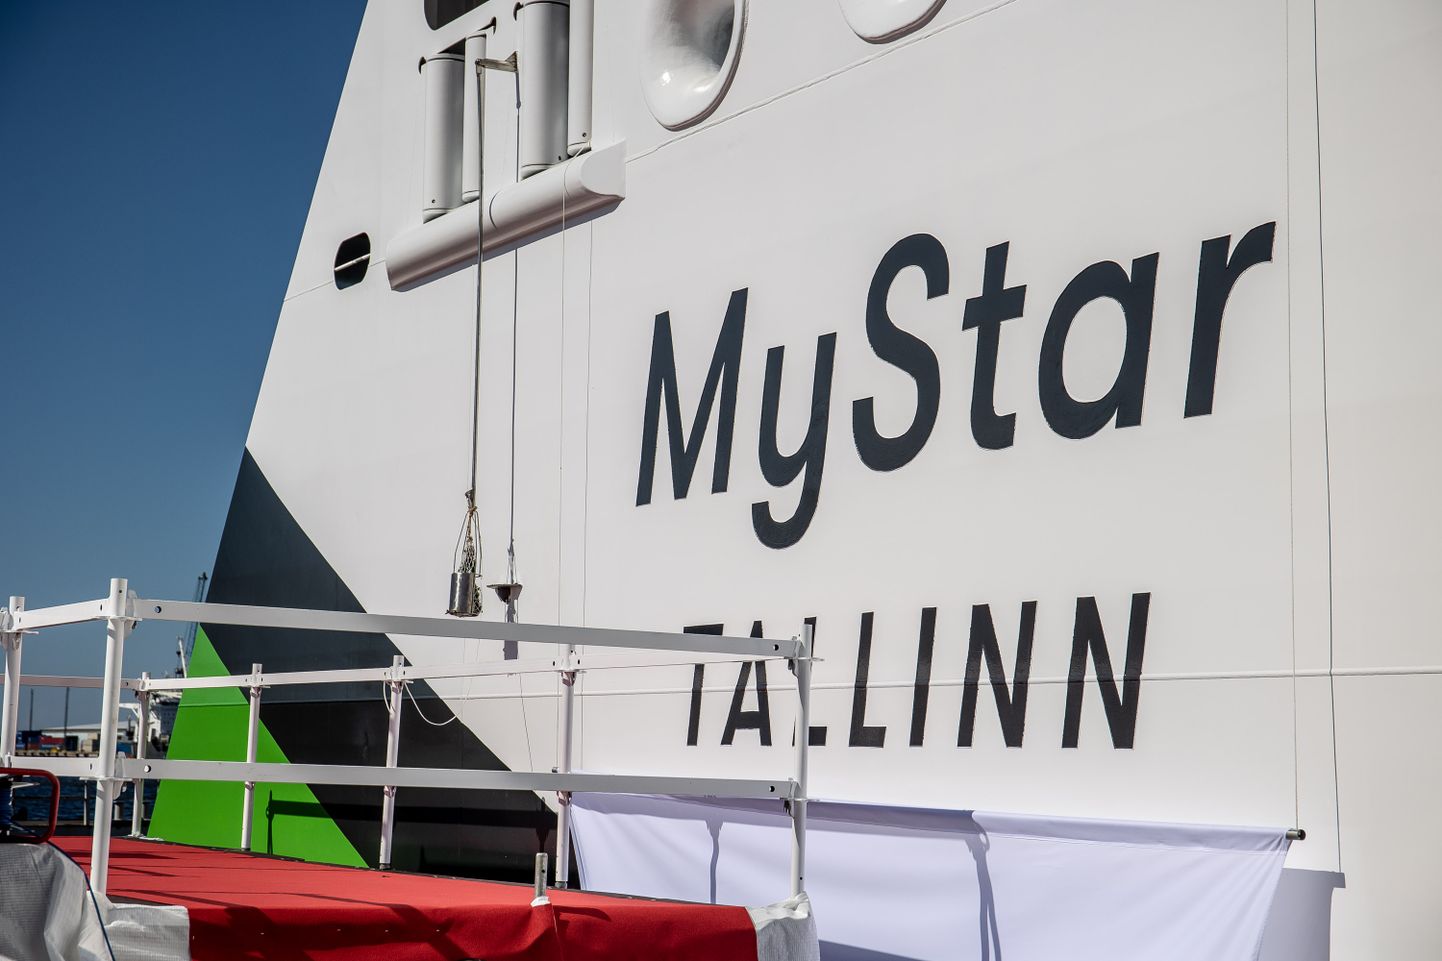 Tallinki uue laeva MyStar ristimine Rauma laevatehases Soomes.